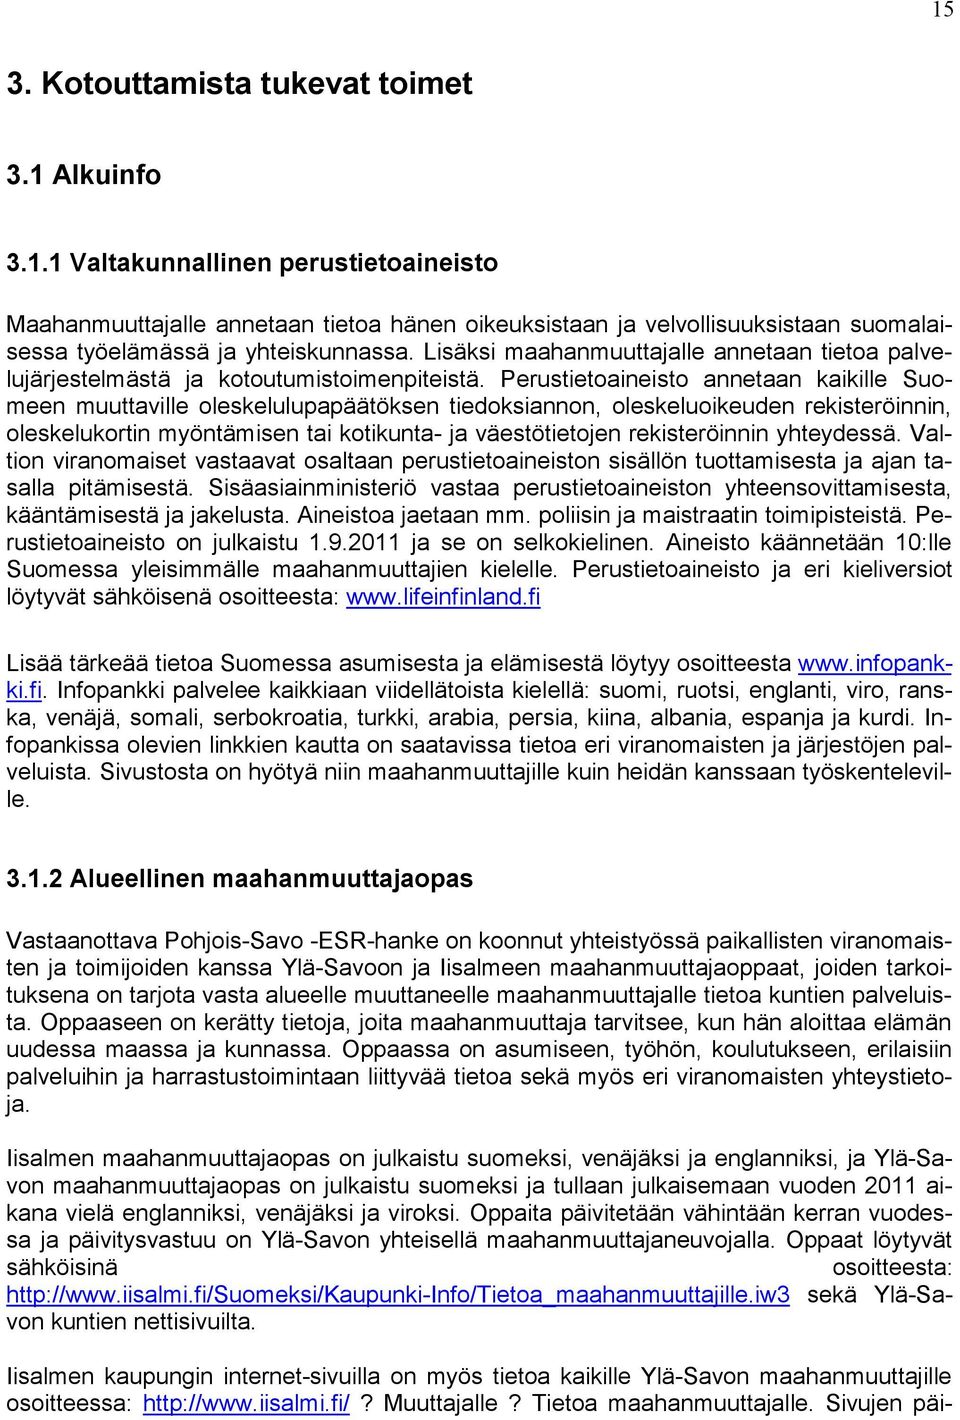 Perustietoaineisto annetaan kaikille Suomeen muuttaville oleskelulupapäätöksen tiedoksiannon, oleskeluoikeuden rekisteröinnin, oleskelukortin myöntämisen tai kotikunta- ja väestötietojen